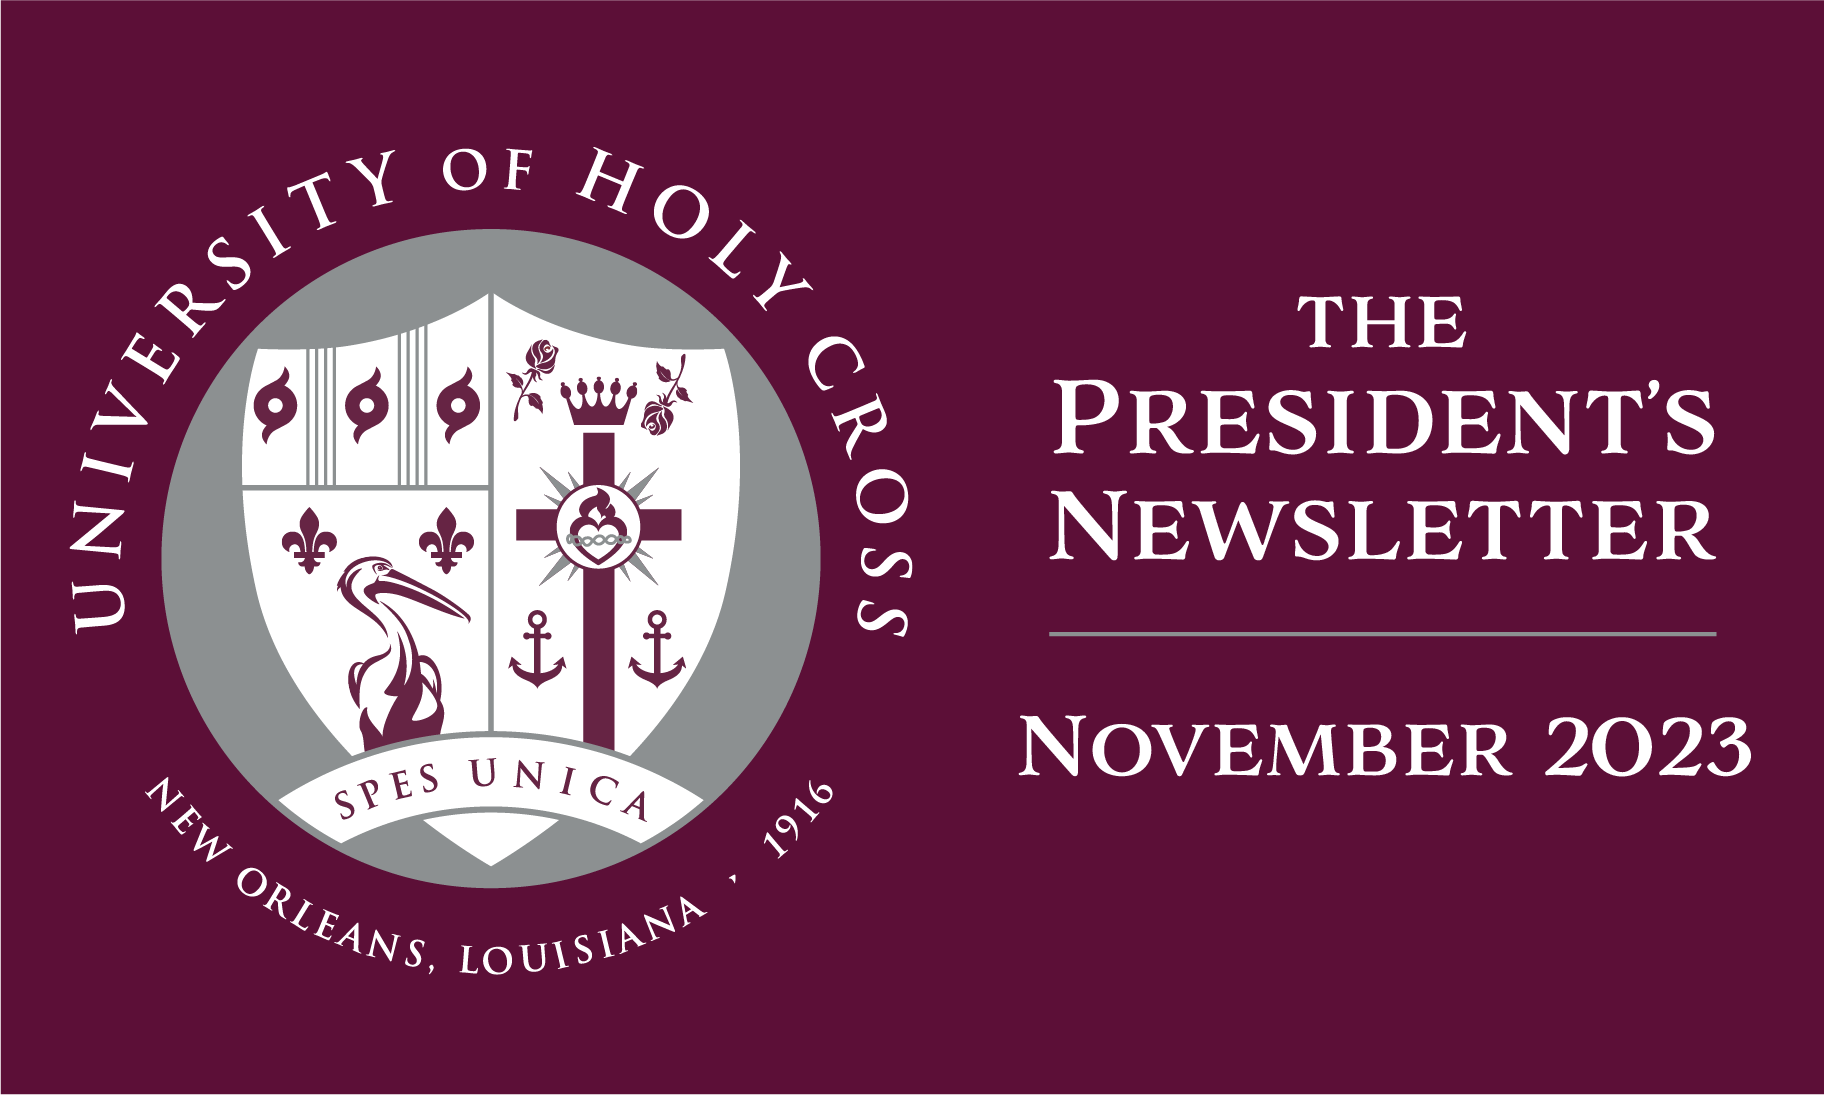 The President's Newsletter - November 2023